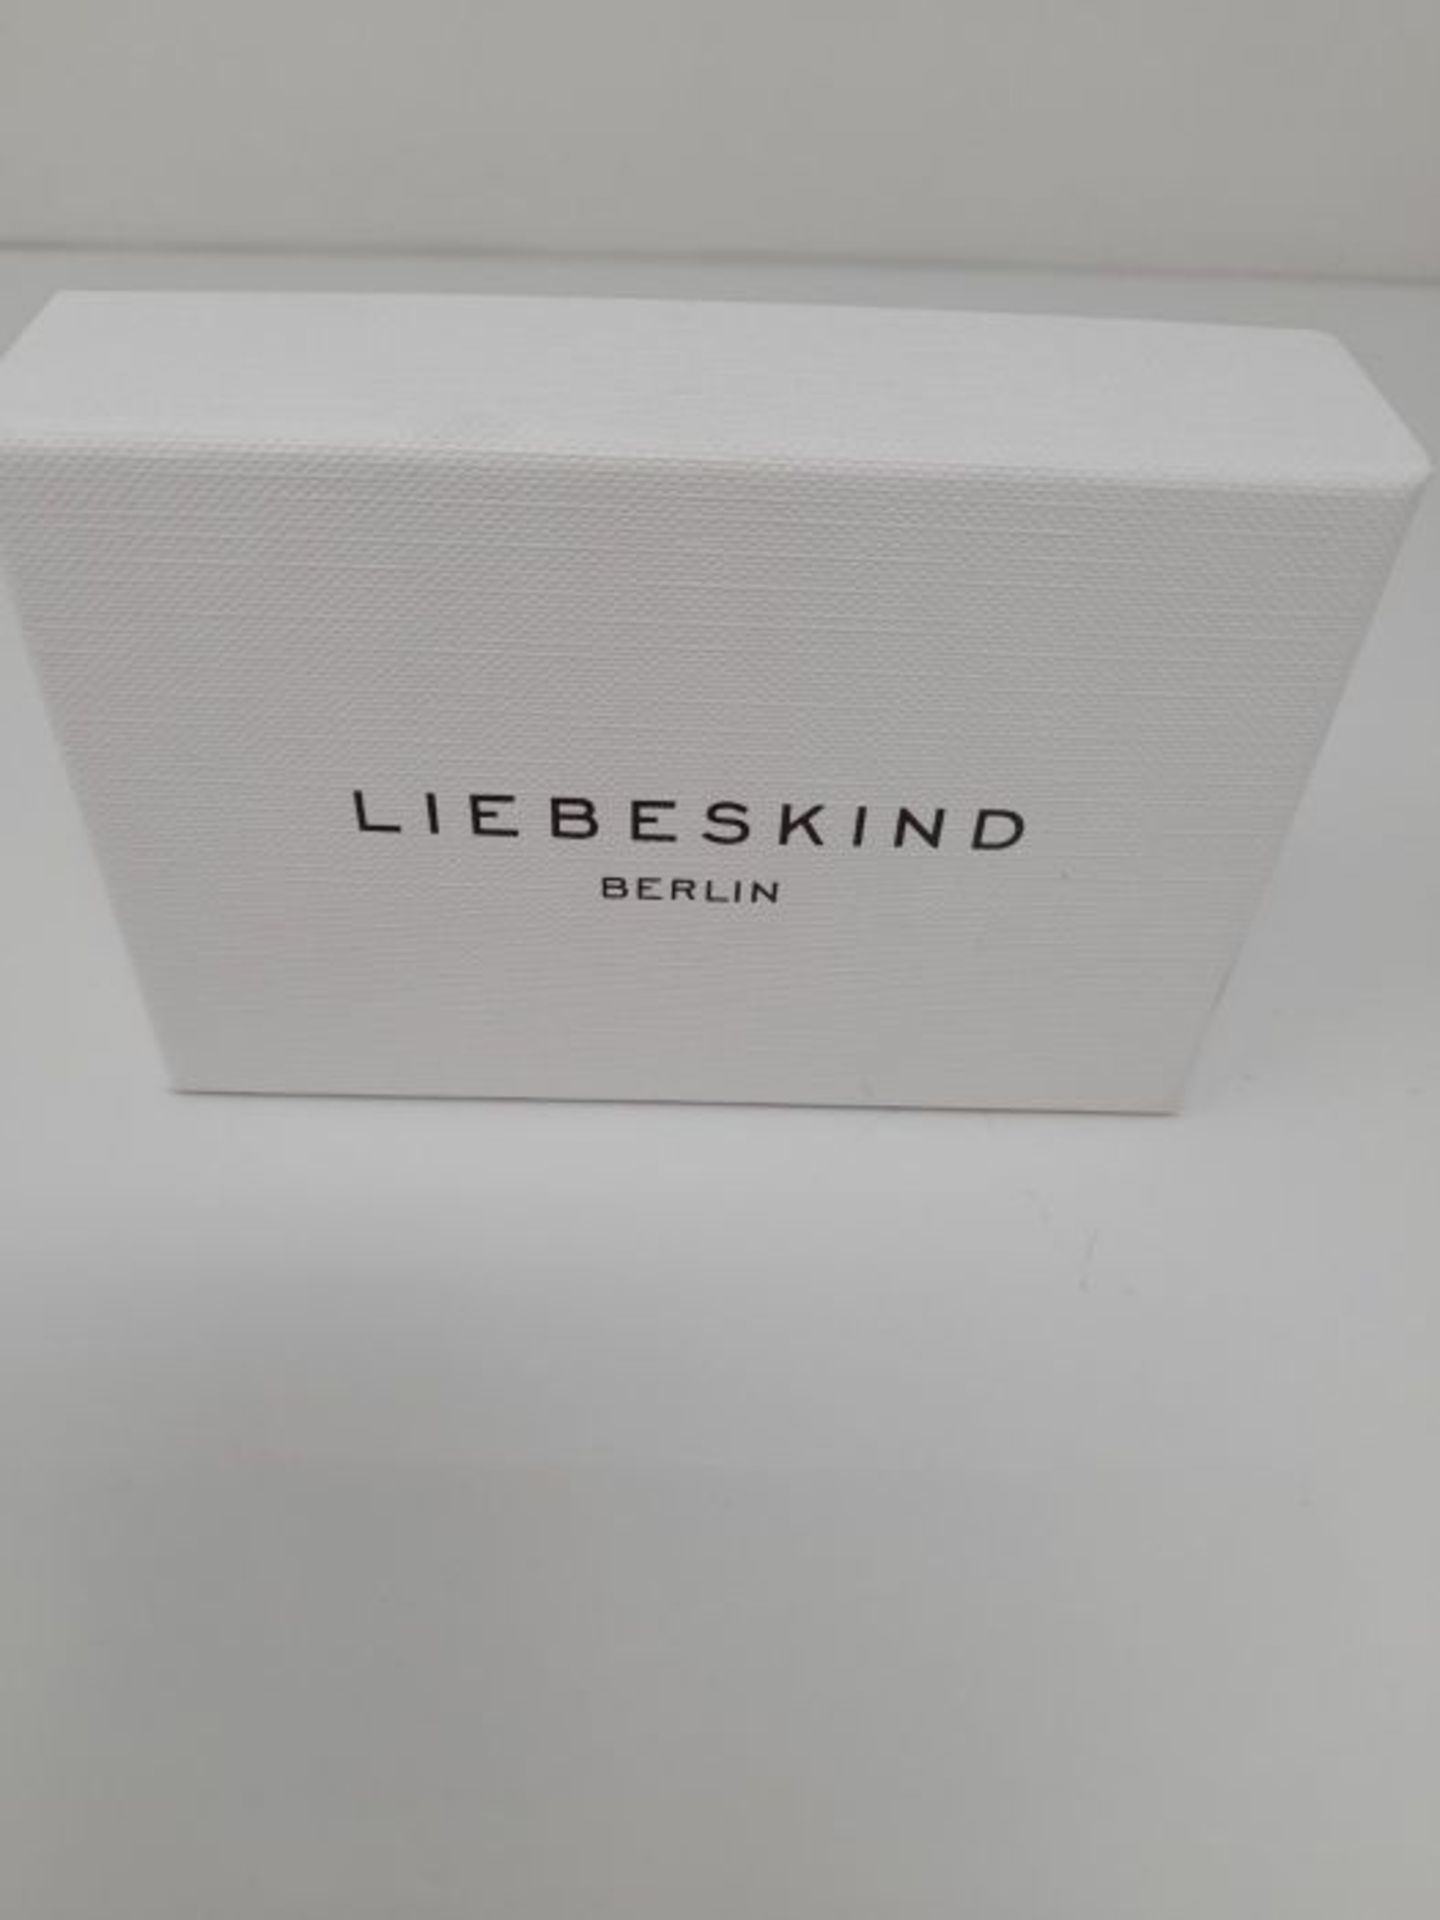 [�C�R�A�C�K�E�D�]� �L�i�e�b�e�s�k�i�n�d� �B�e�r�l�i�n� �D�a�m�e�n� �A�r�m�b�a�n�d� �H�e�r�z� �E�d�e� - Image 2 of 3